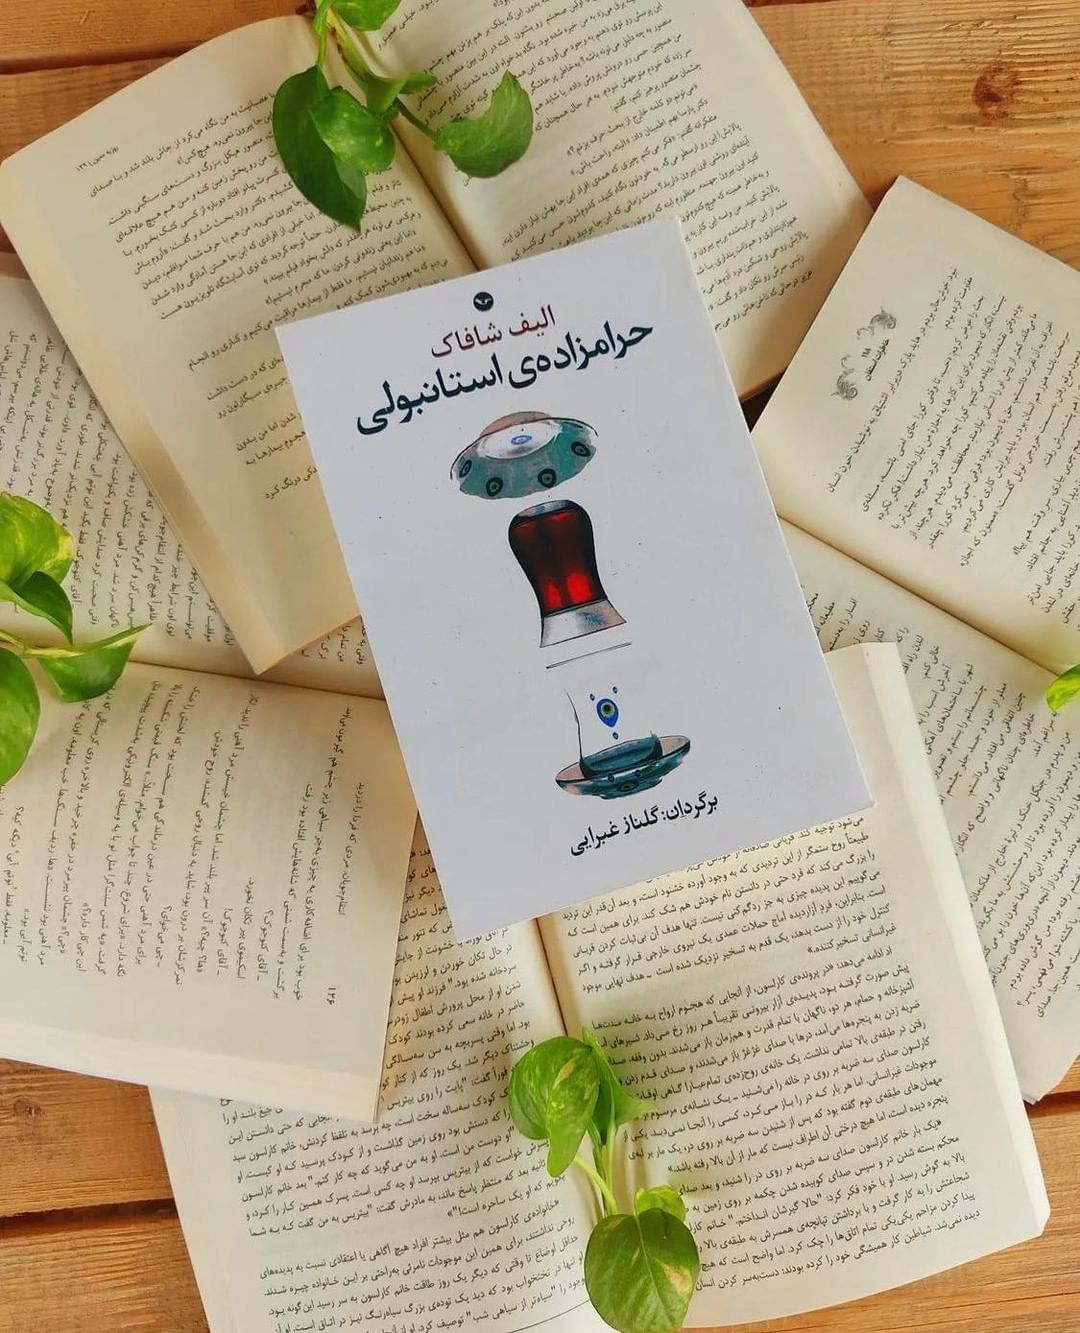 کتاب کامل حرامزاده استانبولی/ الیف شافاک